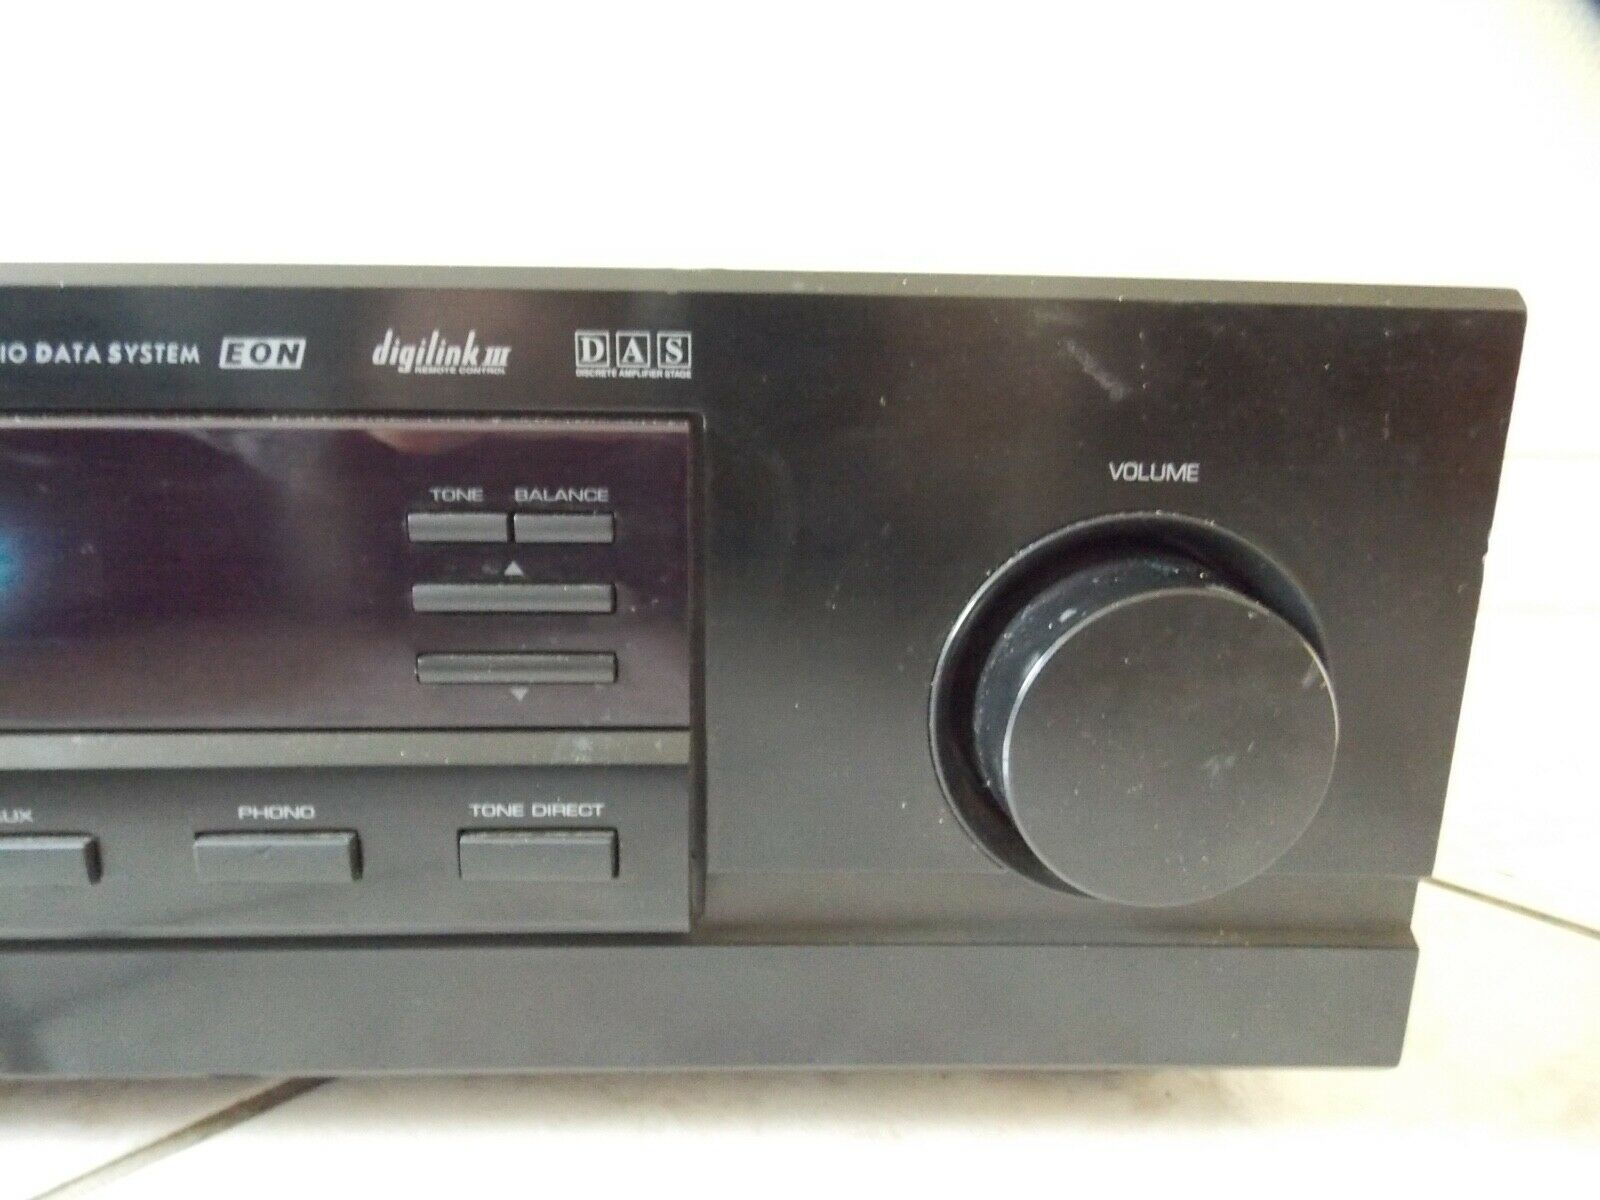 amplificateur amplifier sherwood RX-5700 vintage occasion